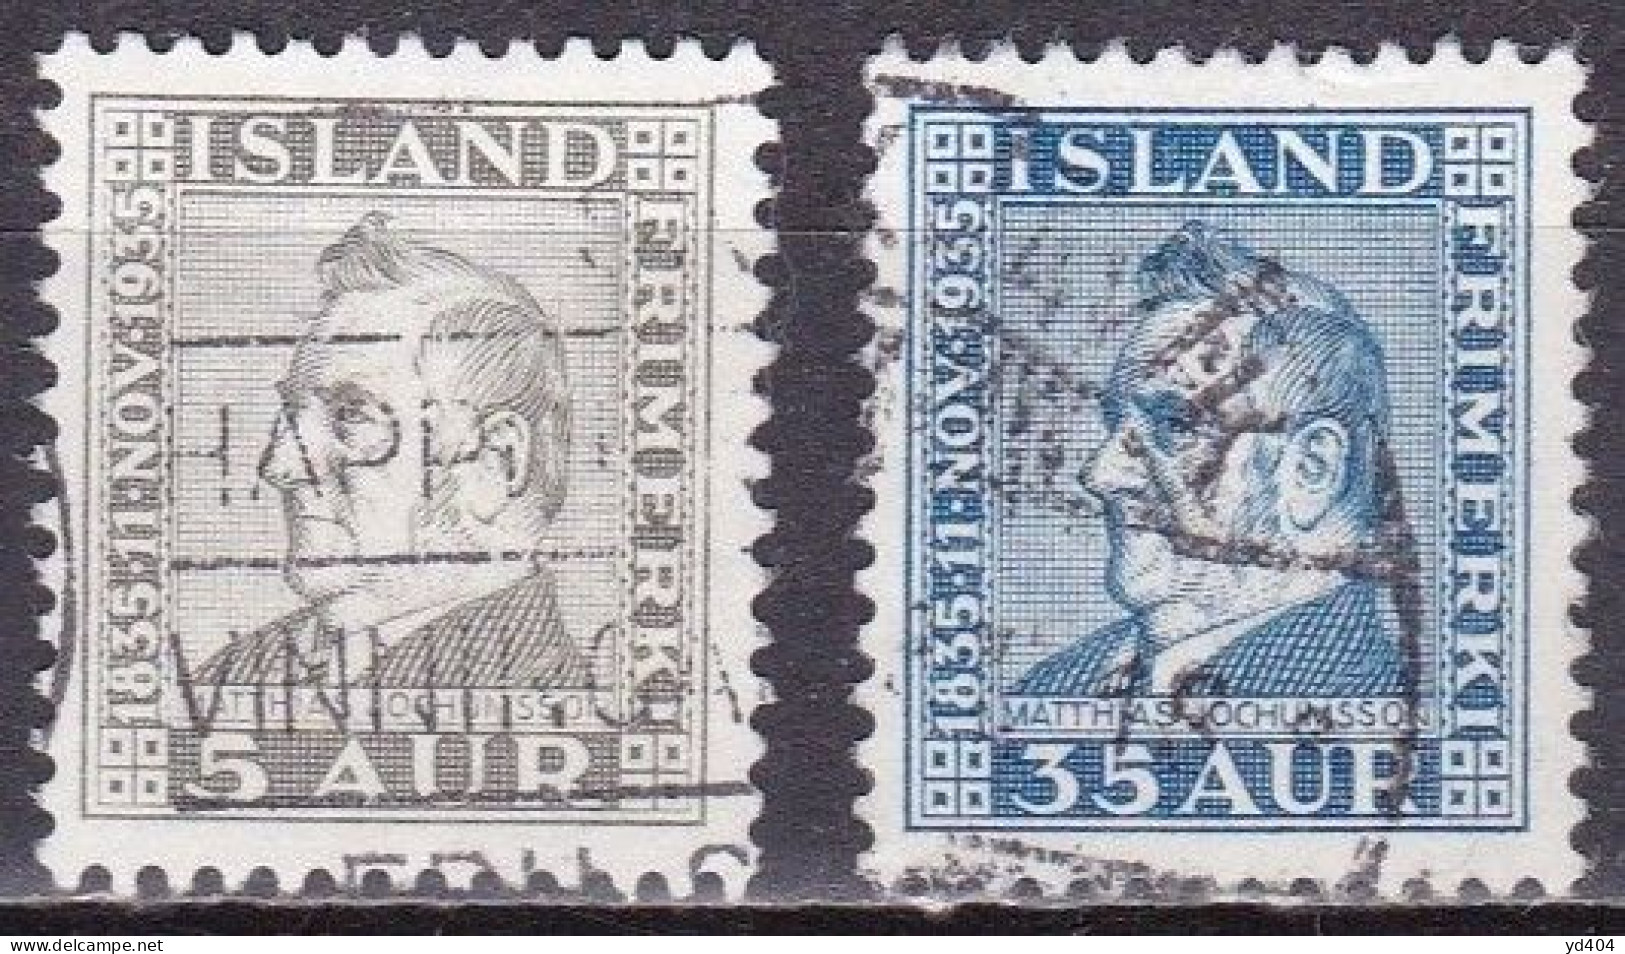 IS031B – ISLANDE – ICELAND – 1935 – MATHIAS JOCHUMSSON – SG # 217-219 USED - Oblitérés